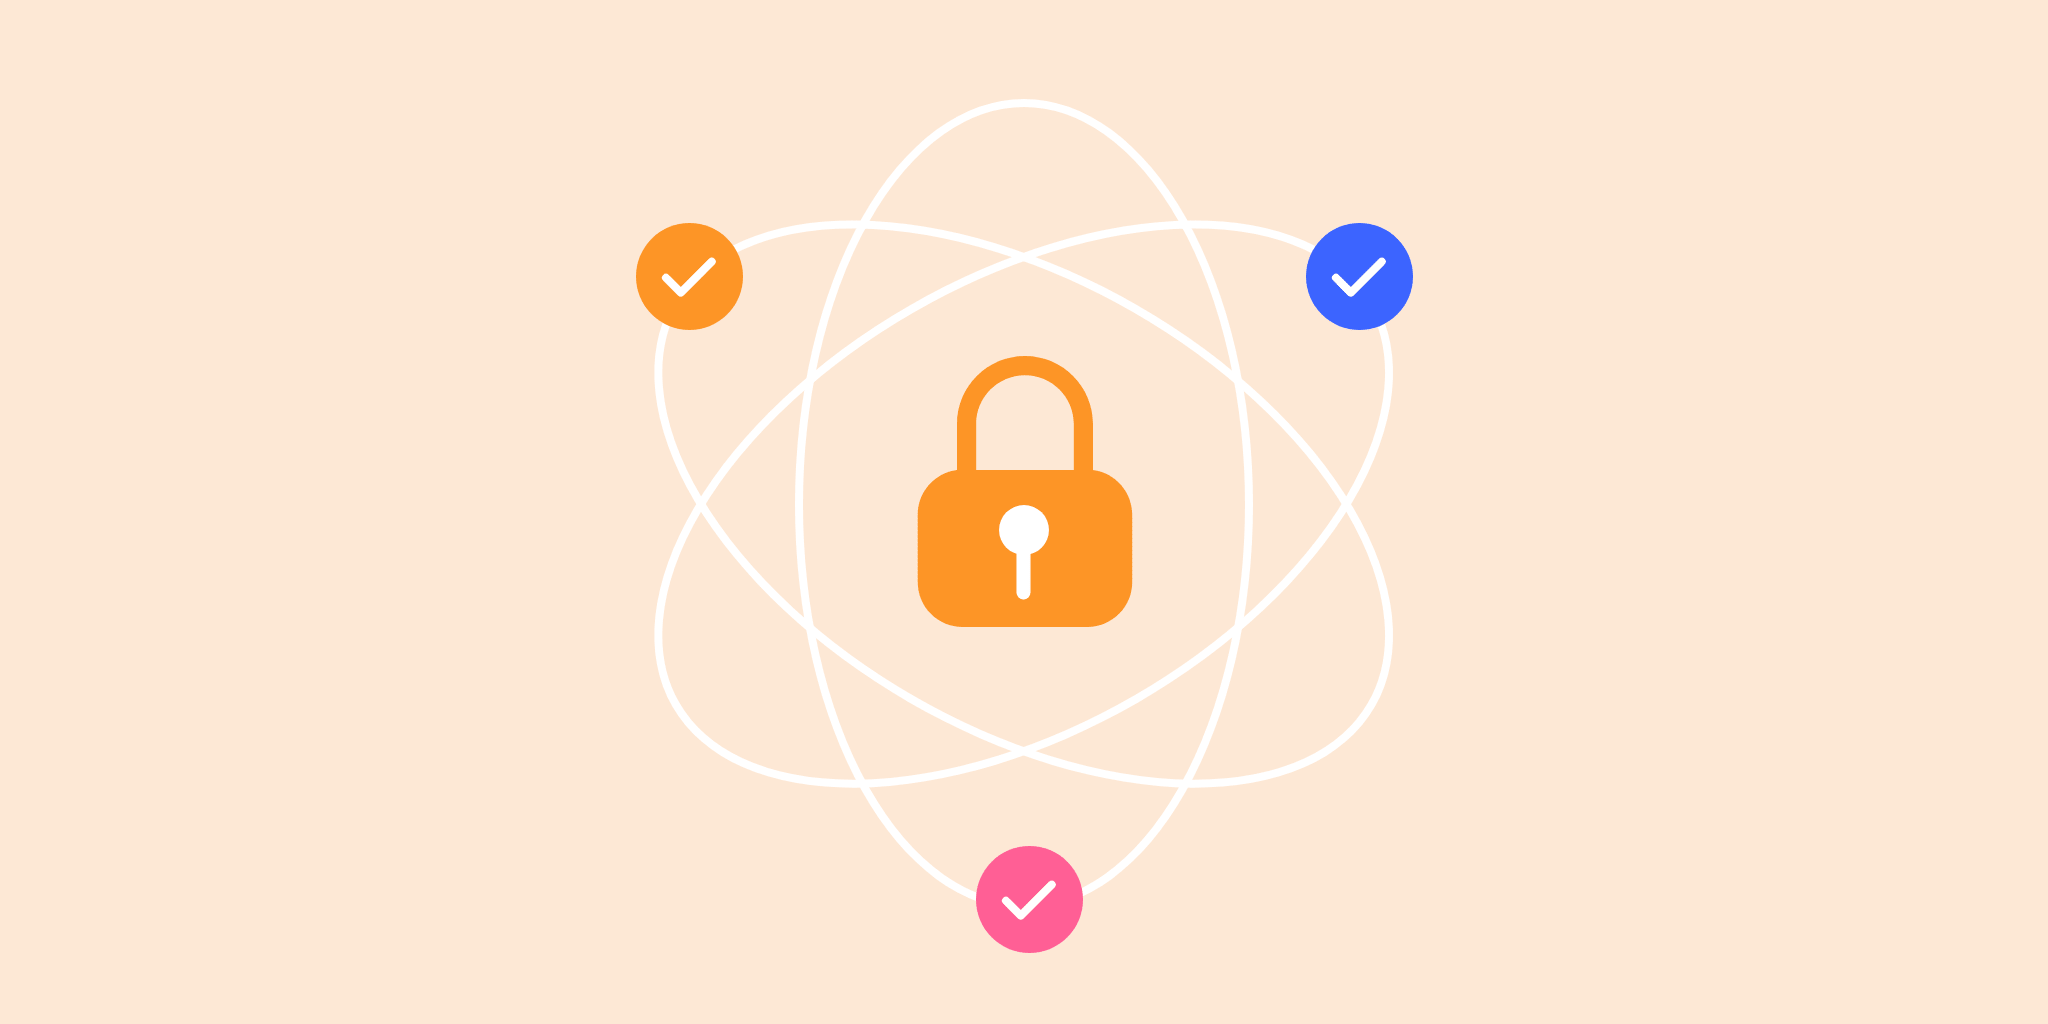 노즈비가 고객 데이터의 보안과 안전에 최우선순위를 두는 이유